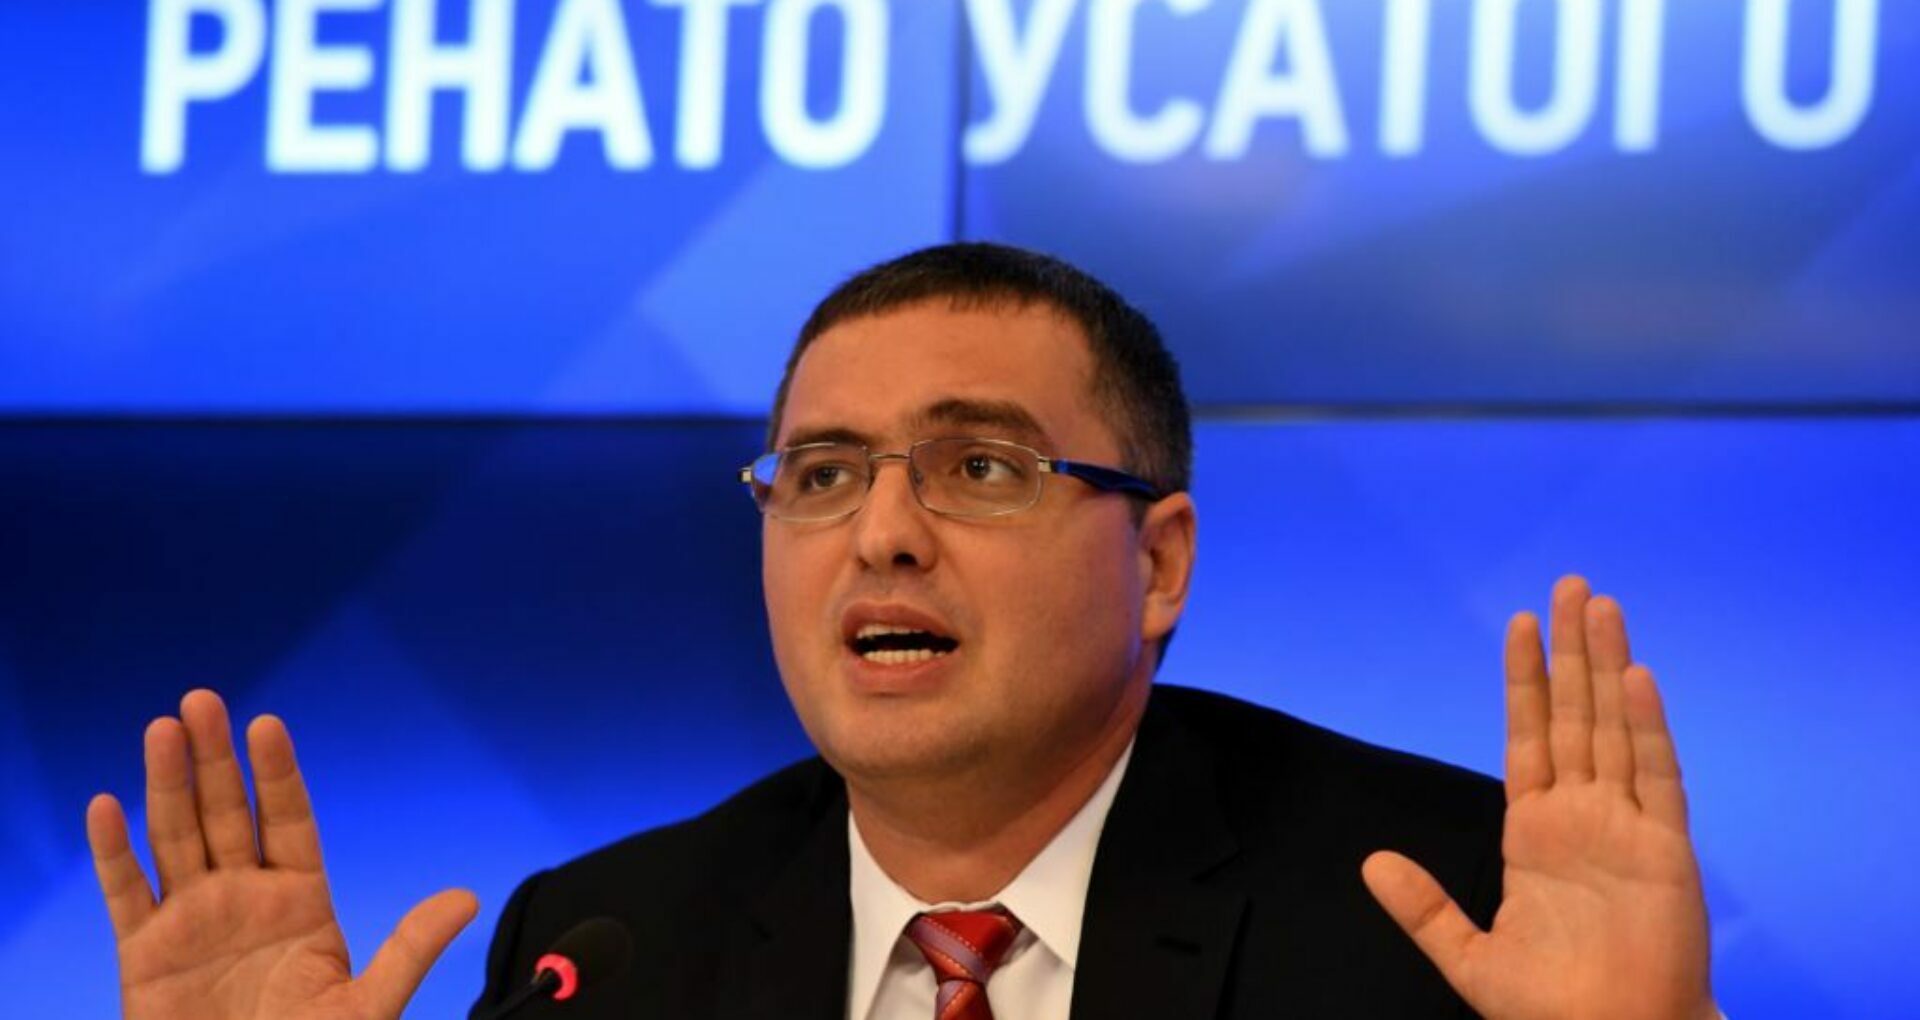 Renato Usatîi Investigated in Russia